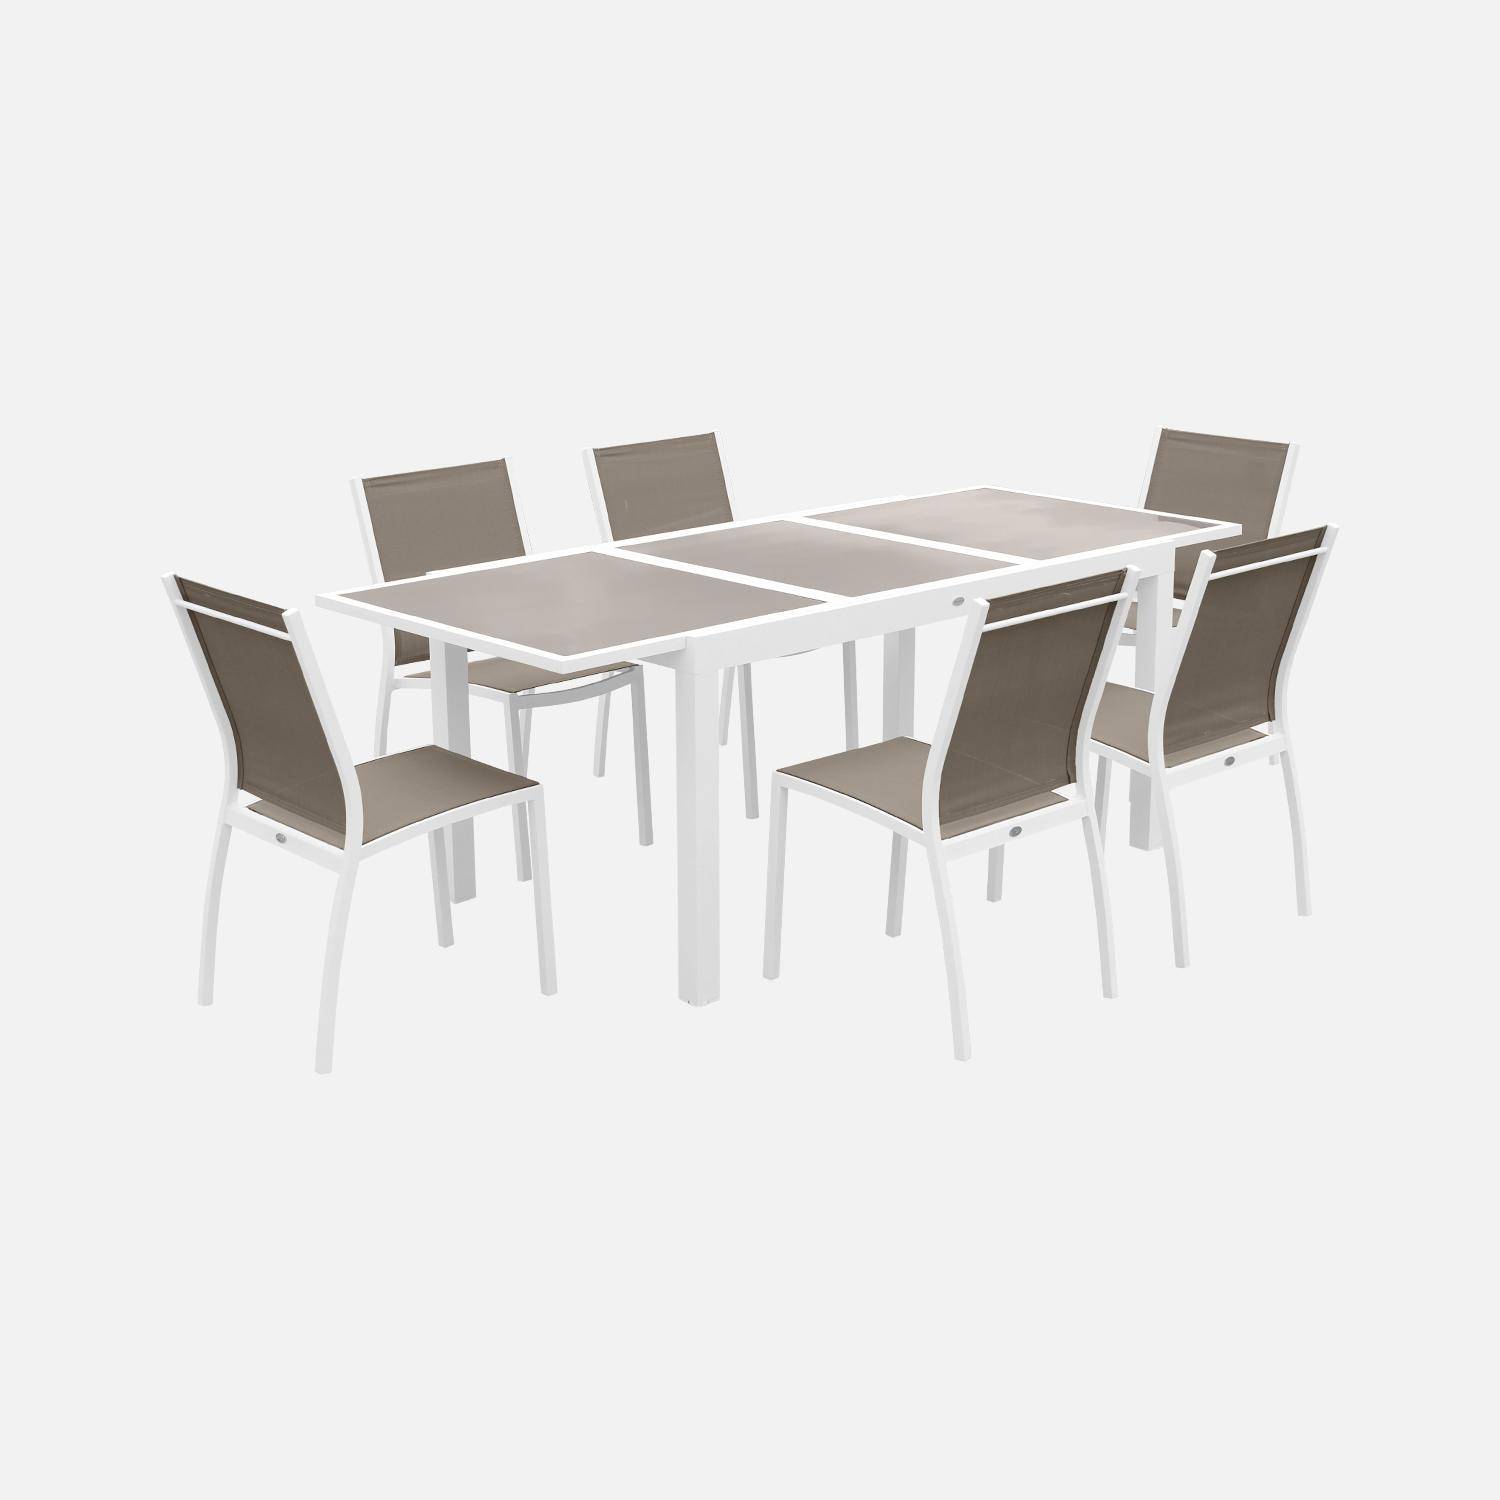 2er Set Gartenstühle - ORLANDO Farbe Weiß / Taupe - Gestell aus Aluminum, Sitz aus Textilene, stapelbar Photo3